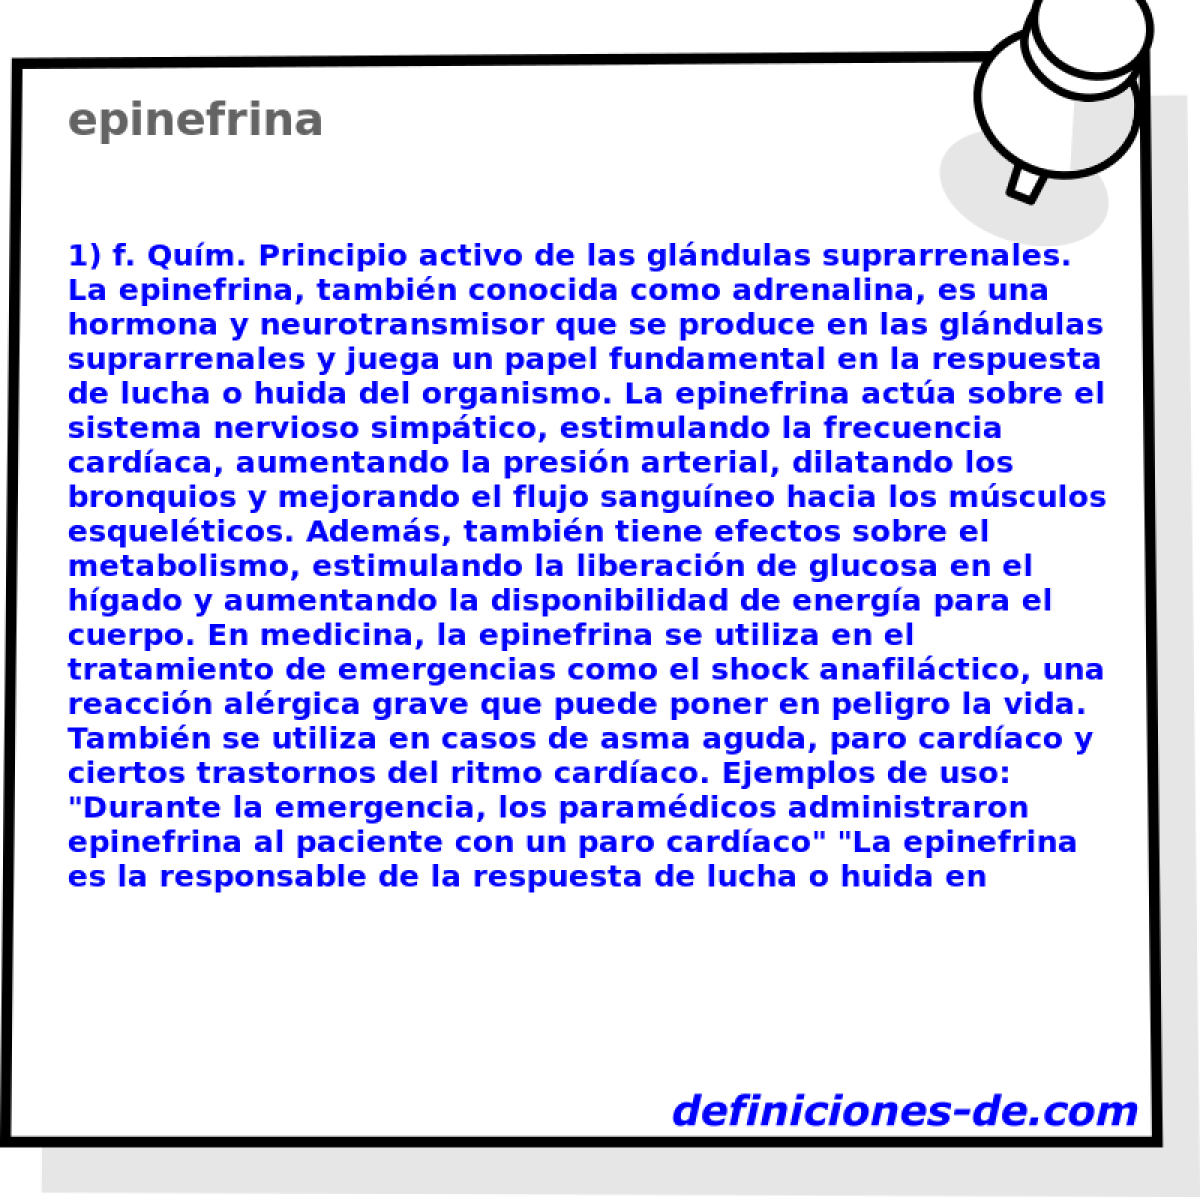 epinefrina 